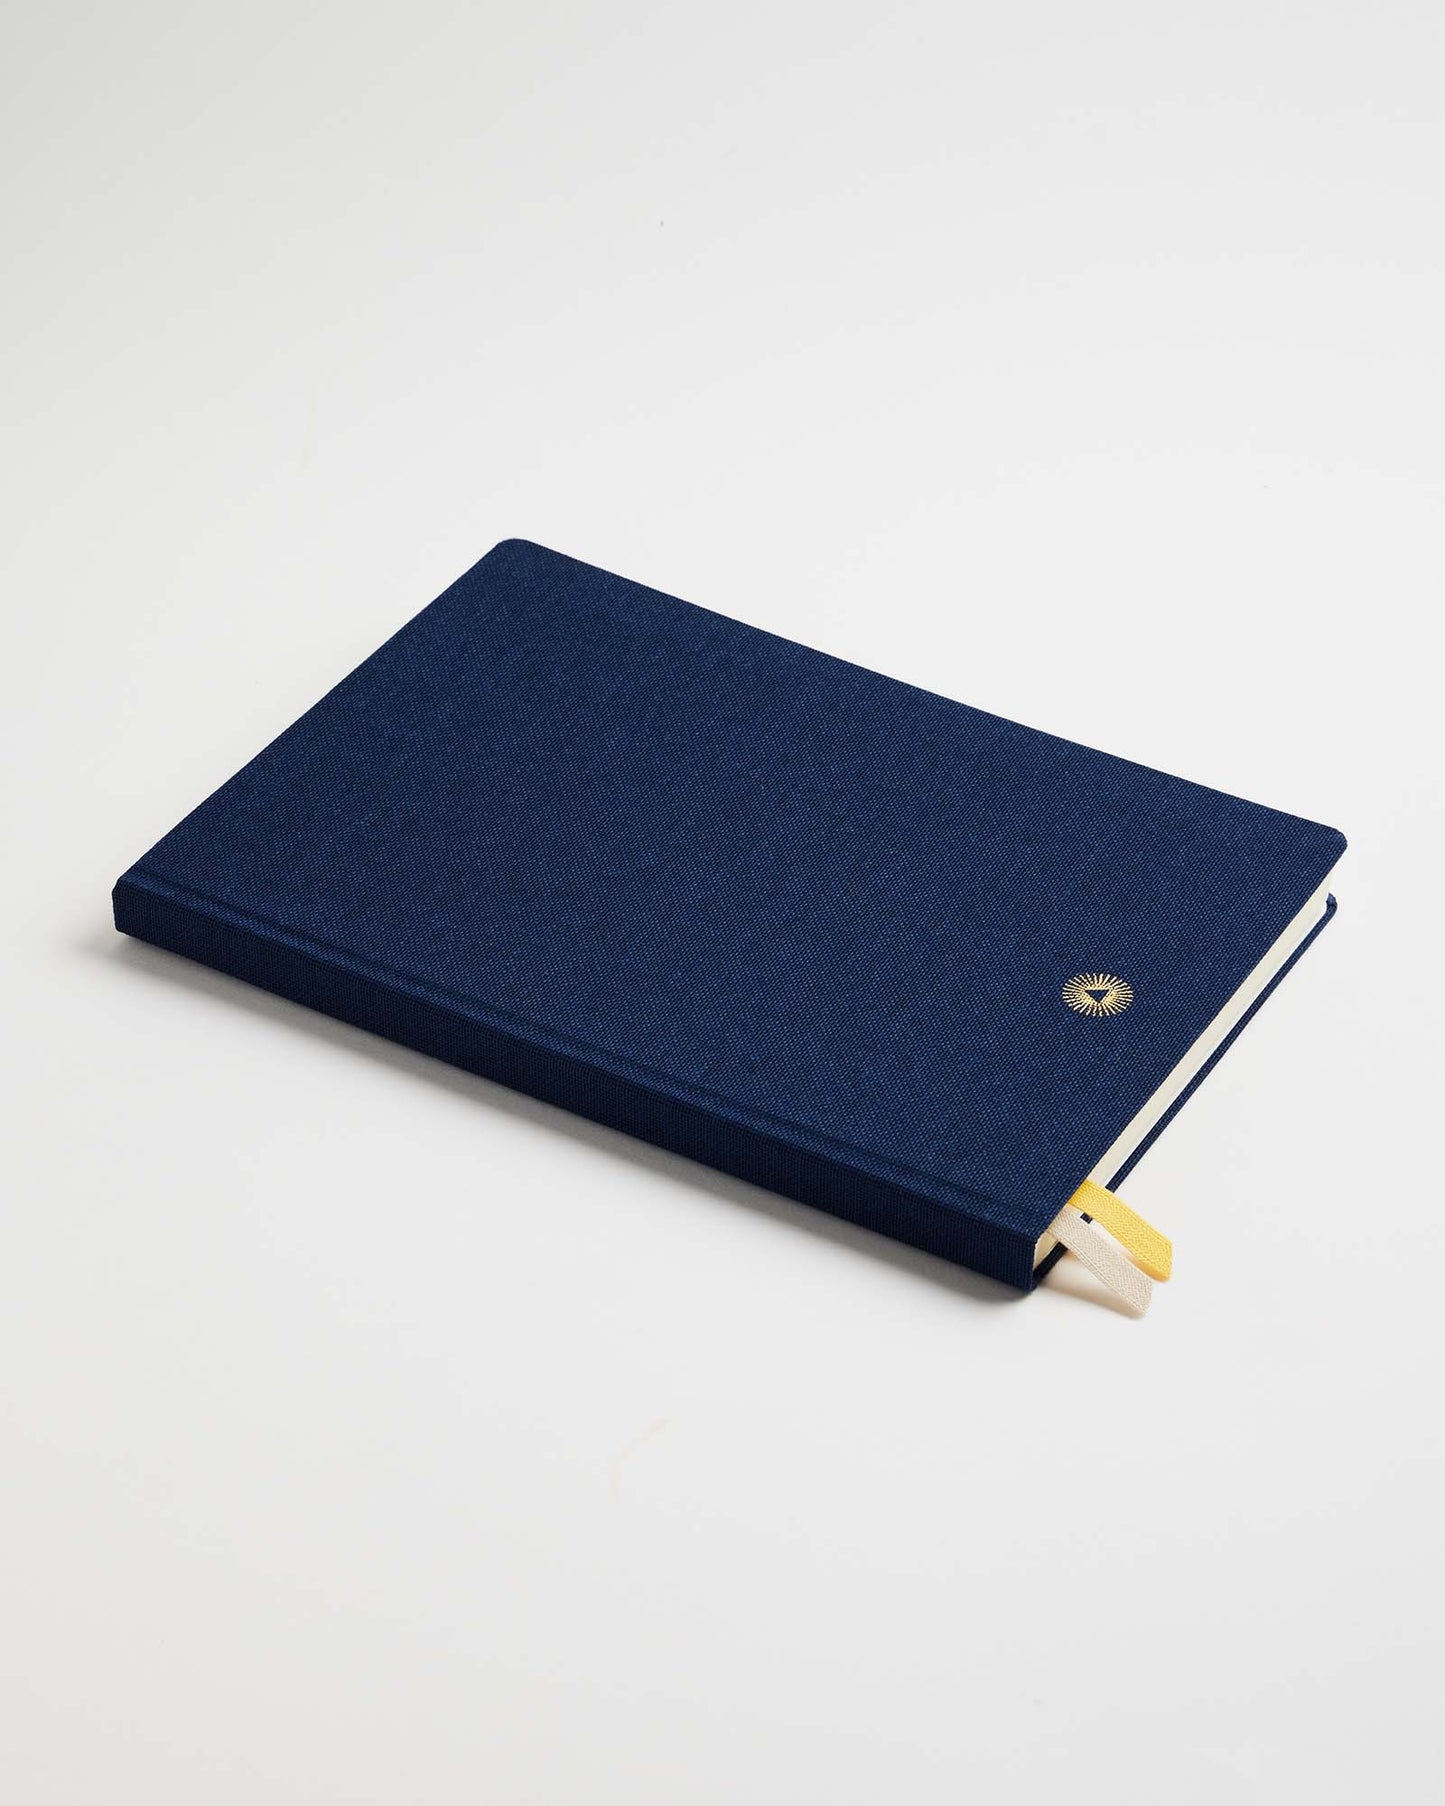 Premium Notebook - Midnight by Intelligent Change